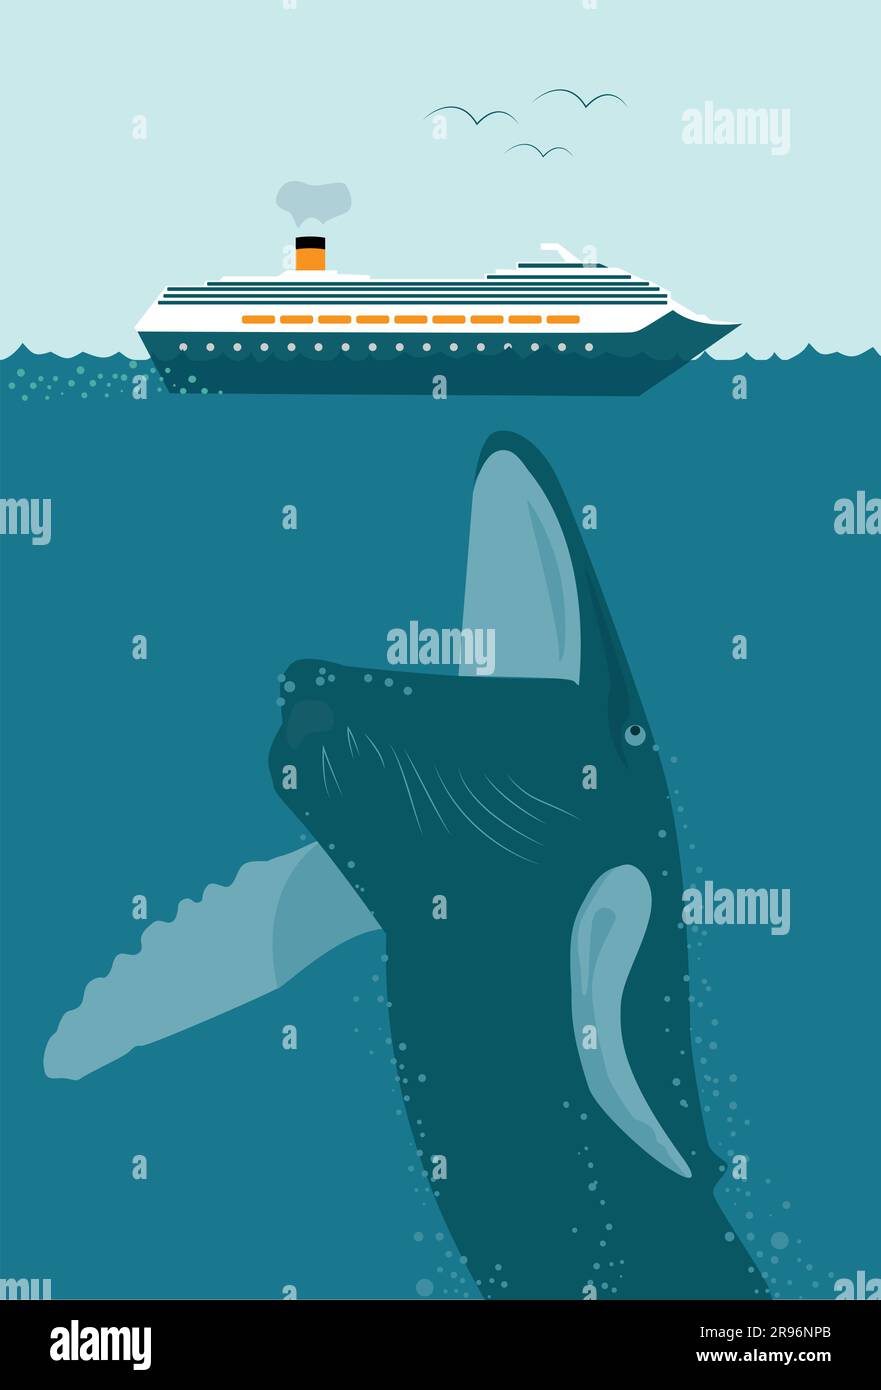 Big Whale, Fish Will Engulf, Swallow e Eat Small Cruise Ship come Predator e Prey in the Ocean Illustrazione Vettoriale